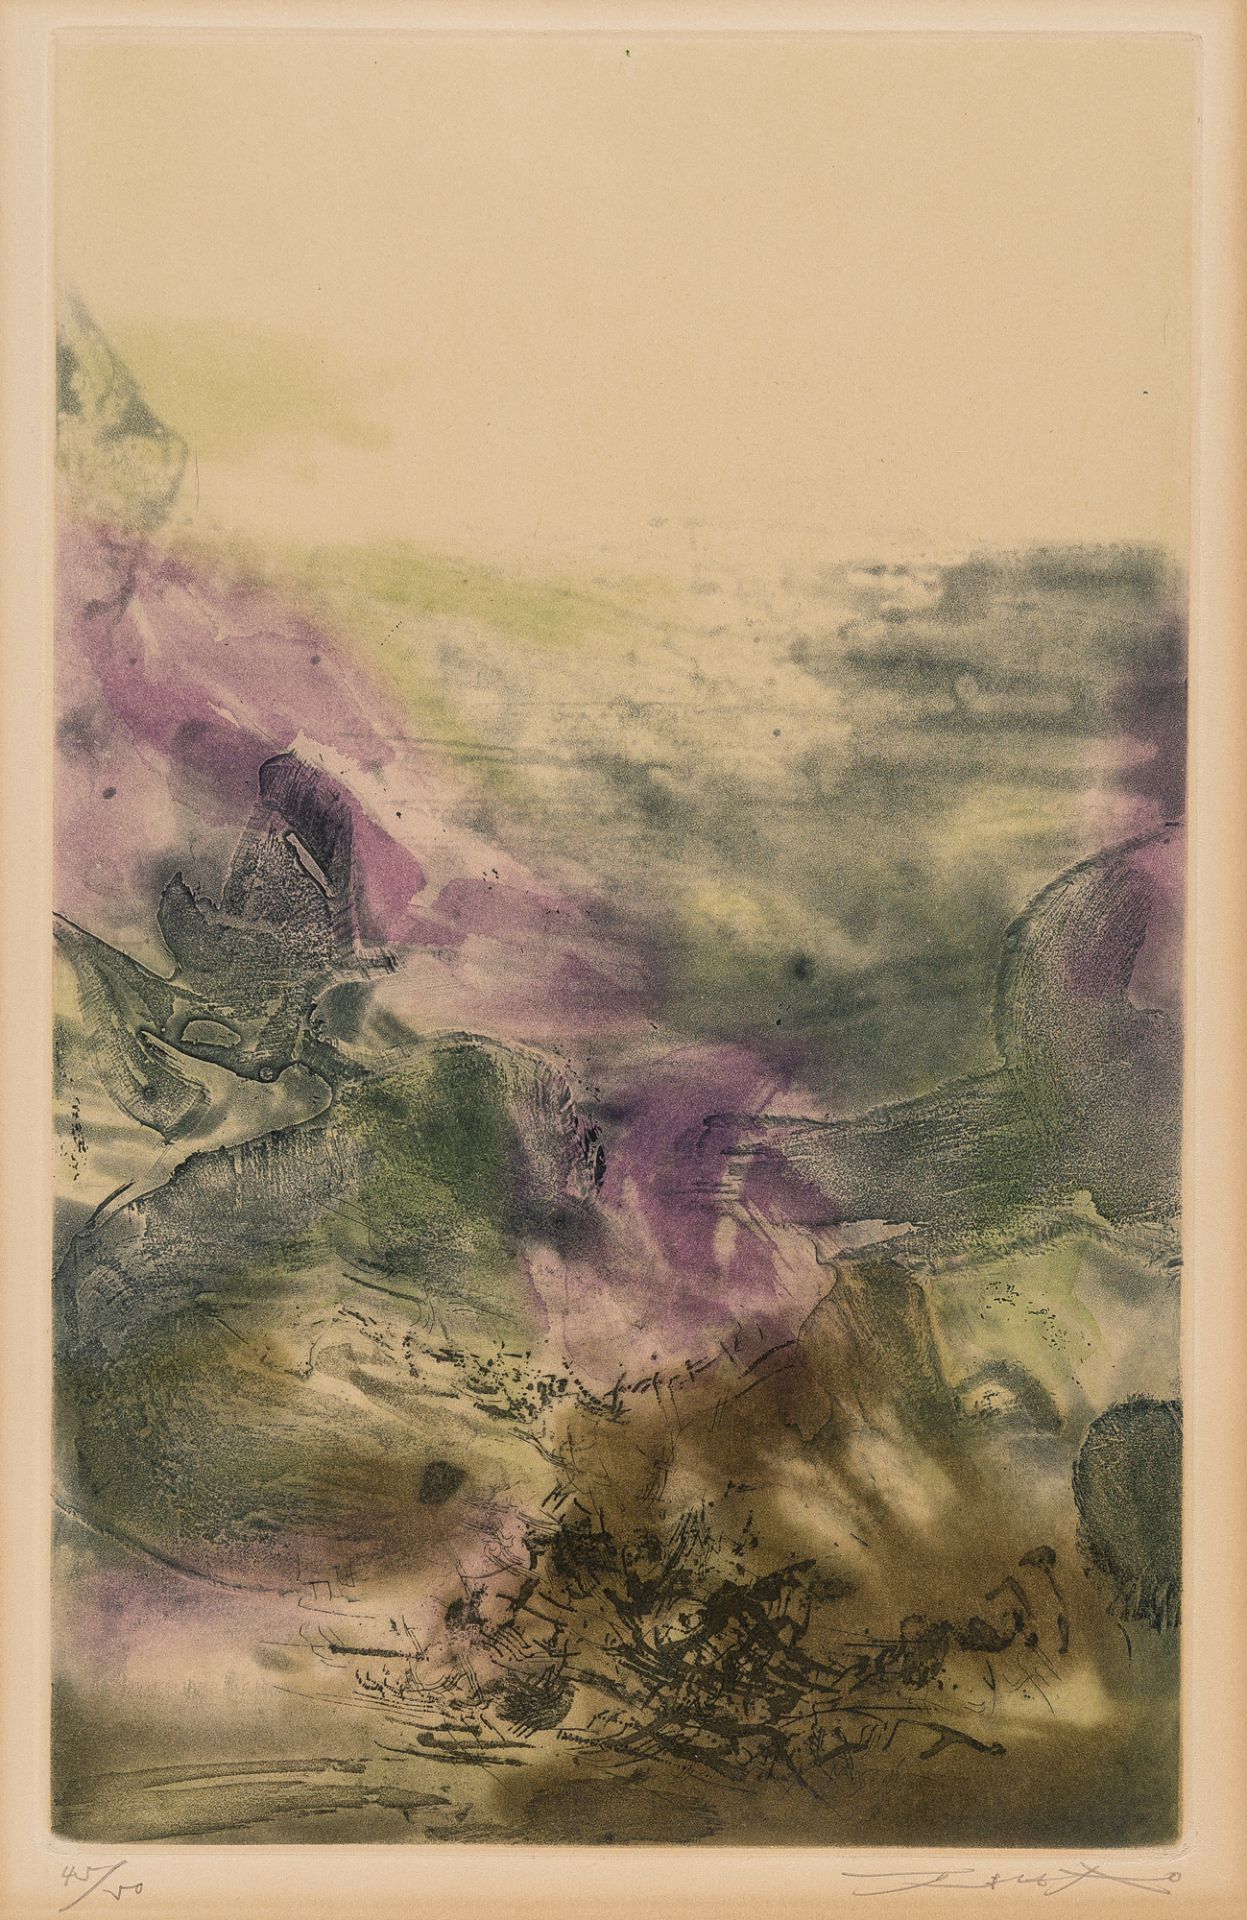 Zao Wou-Ki (1921 Peking - Nyon/Schweiz 2013), Untitled from: Canto Pisan de Ezra PoundEtching in